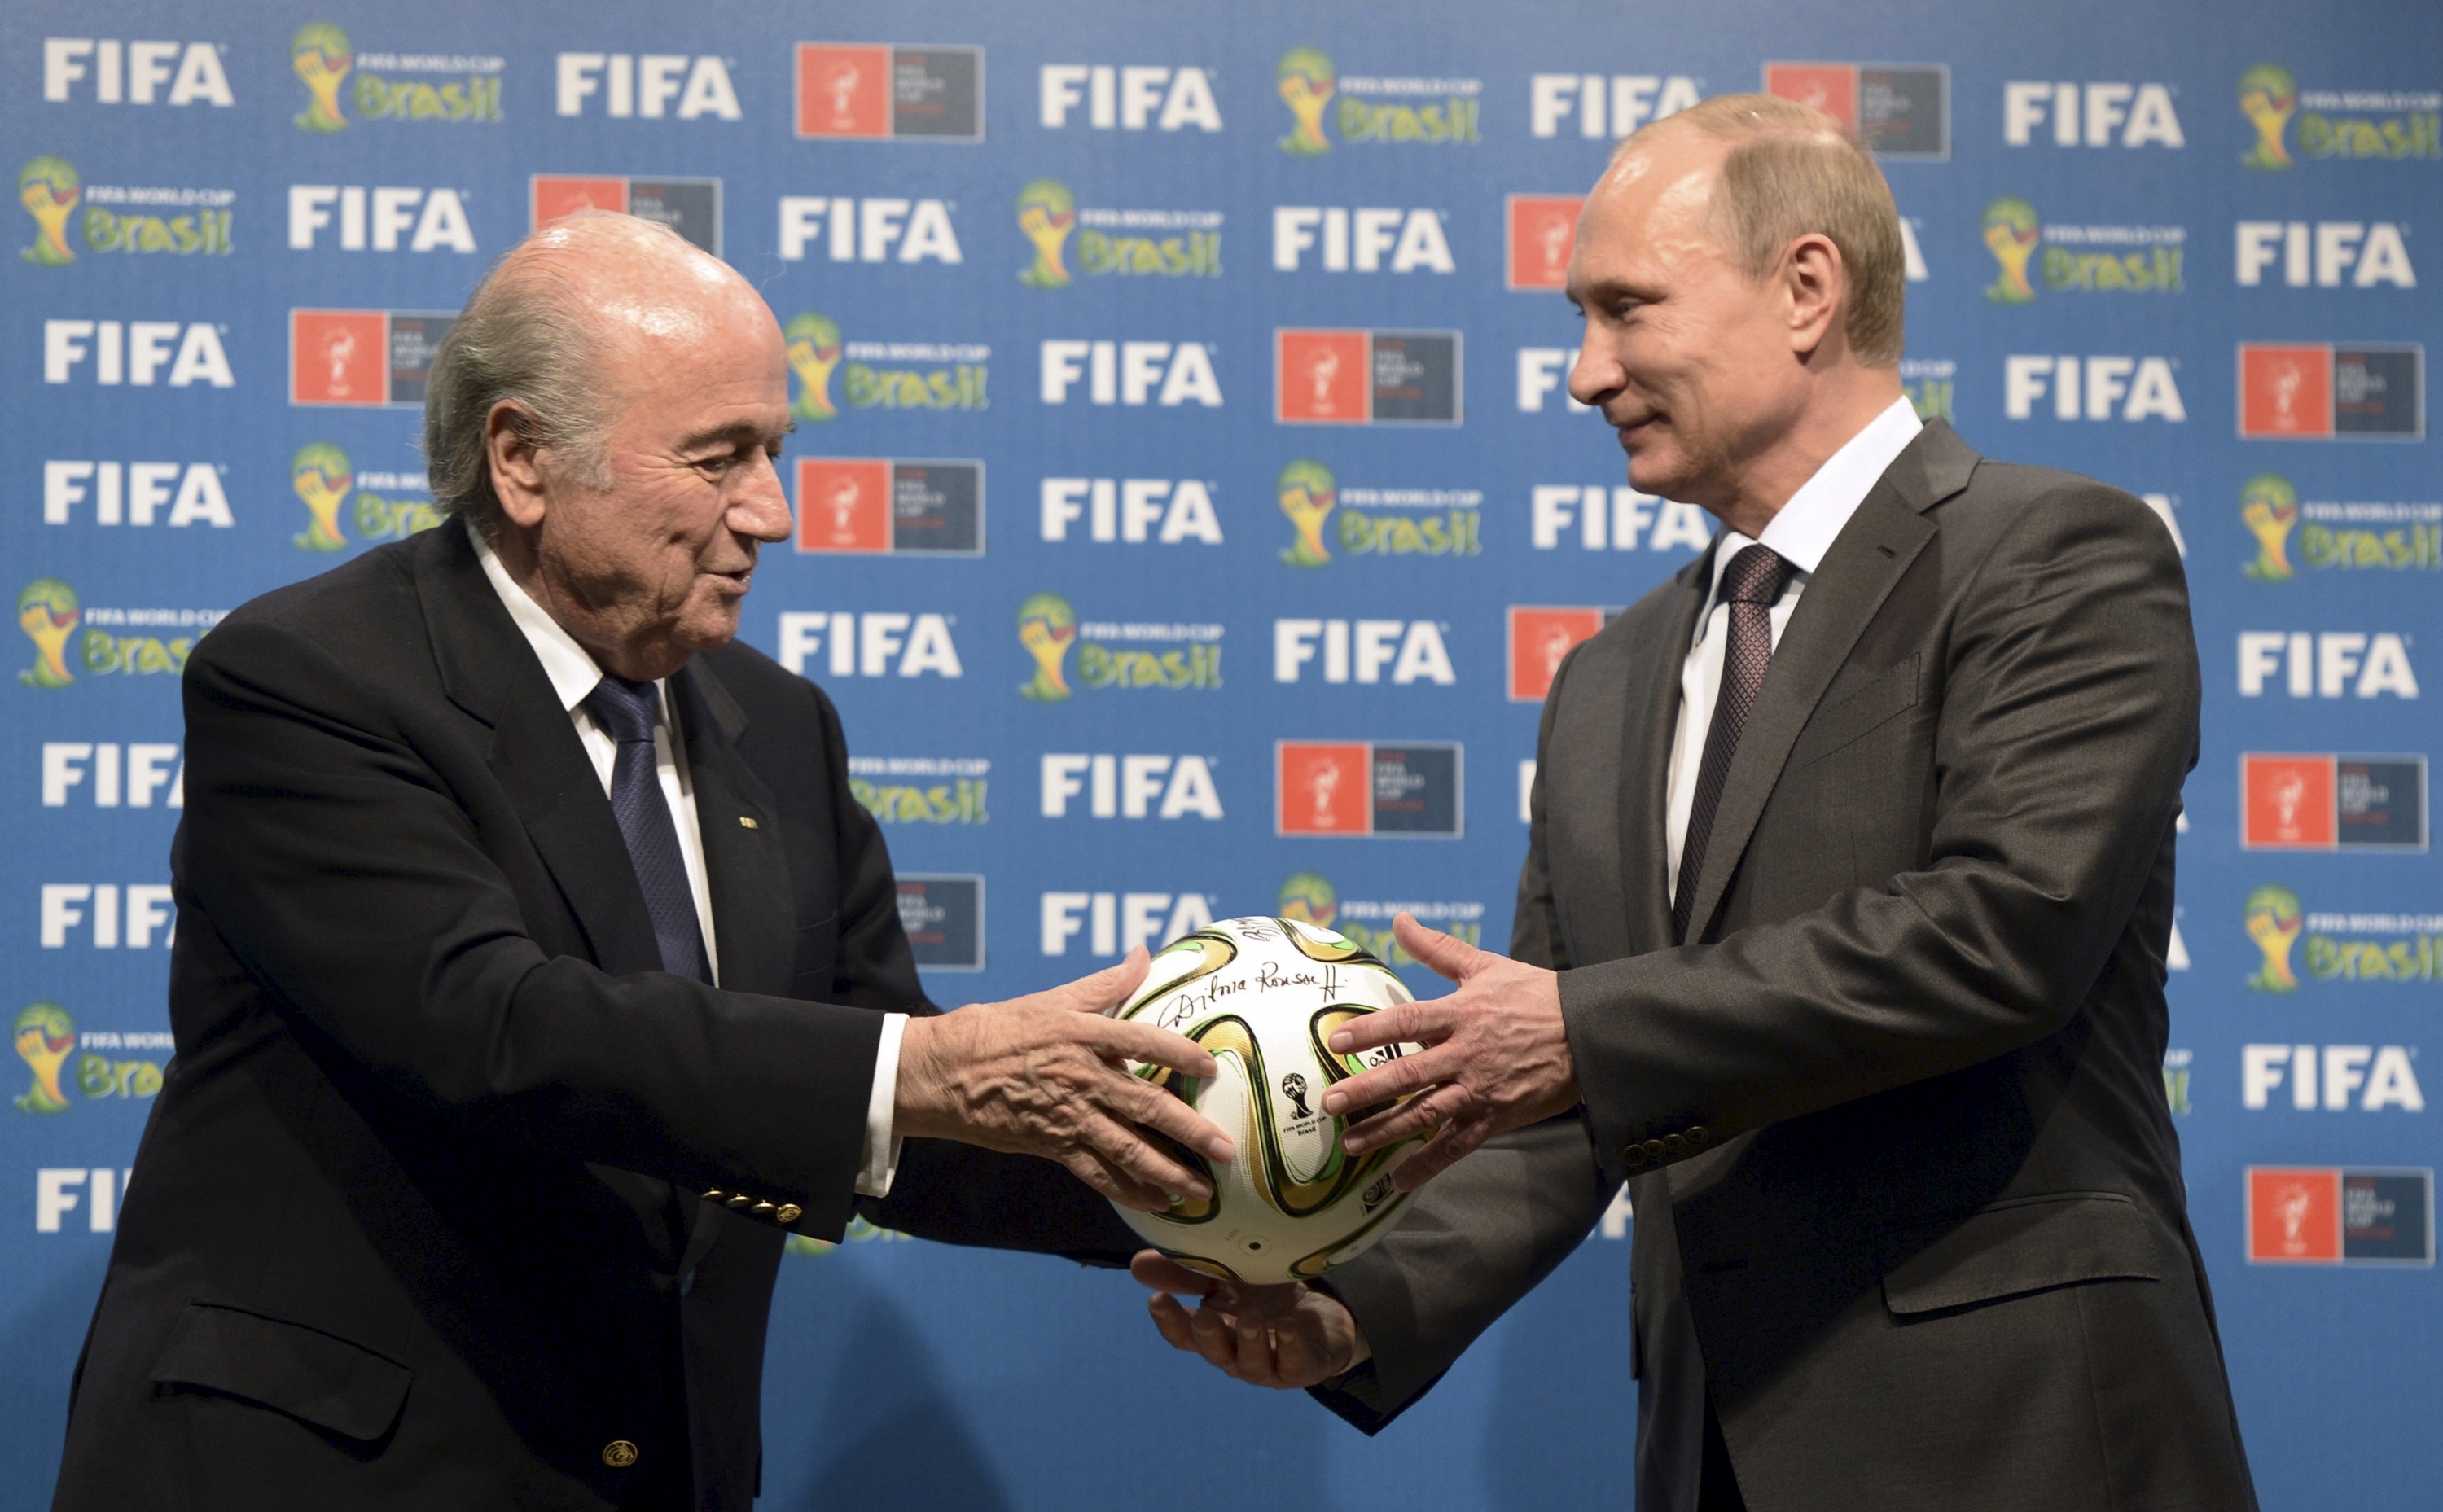 Hasta el momento ni el Gobierno ruso ni representantes de la FIFA han dado declaraciones sobre la supuesta amenaza terrorista.